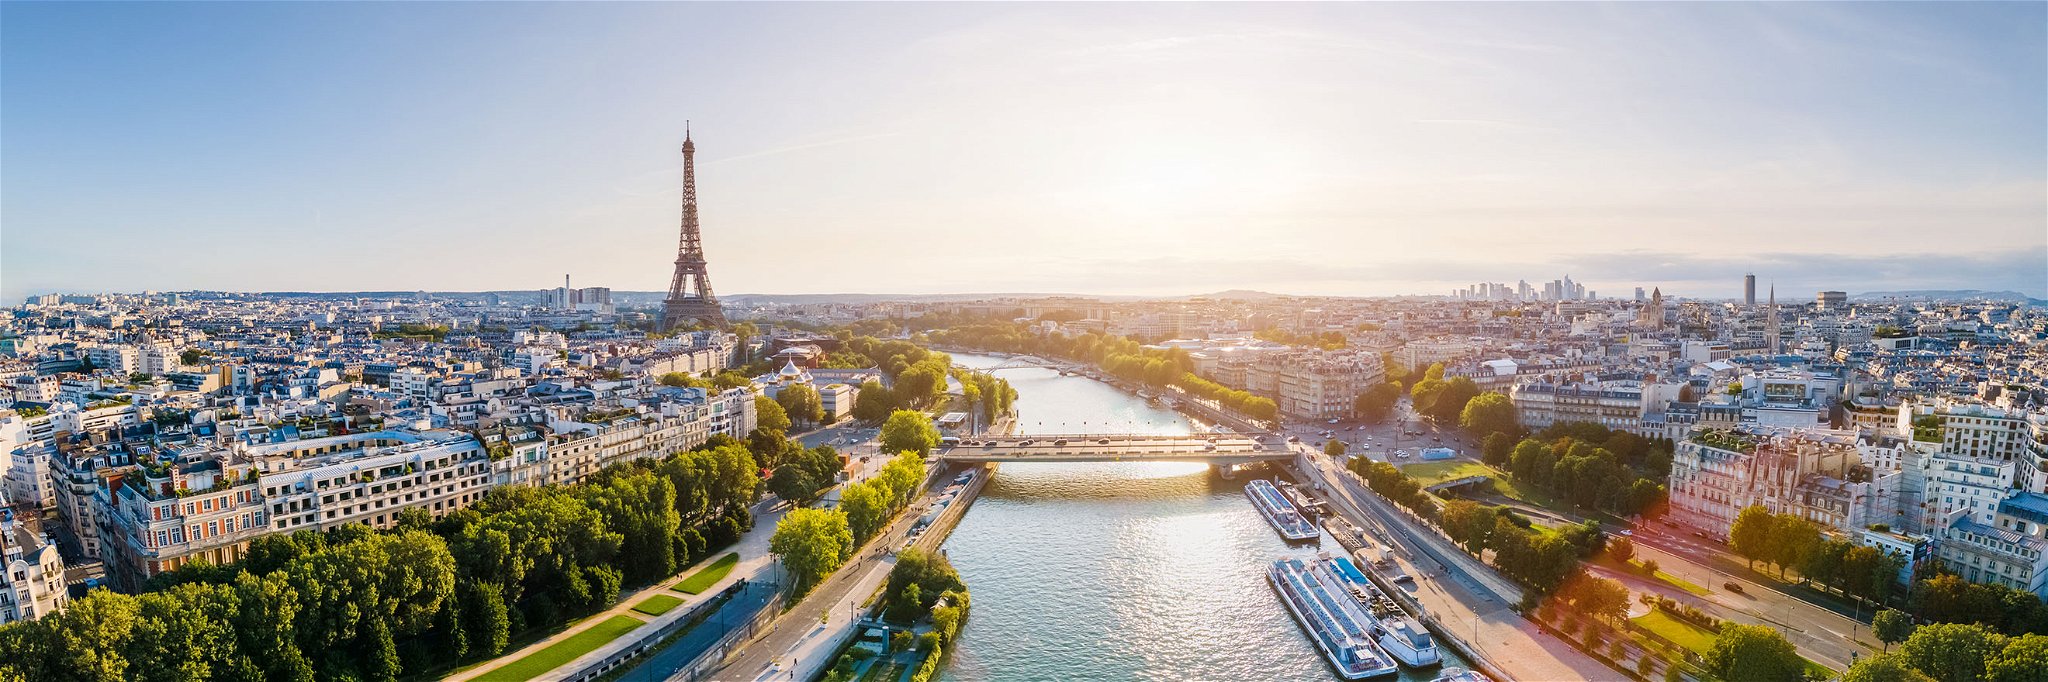 Jährlich empfängt Paris rund 32 Millionen Touristen aus aller Welt.